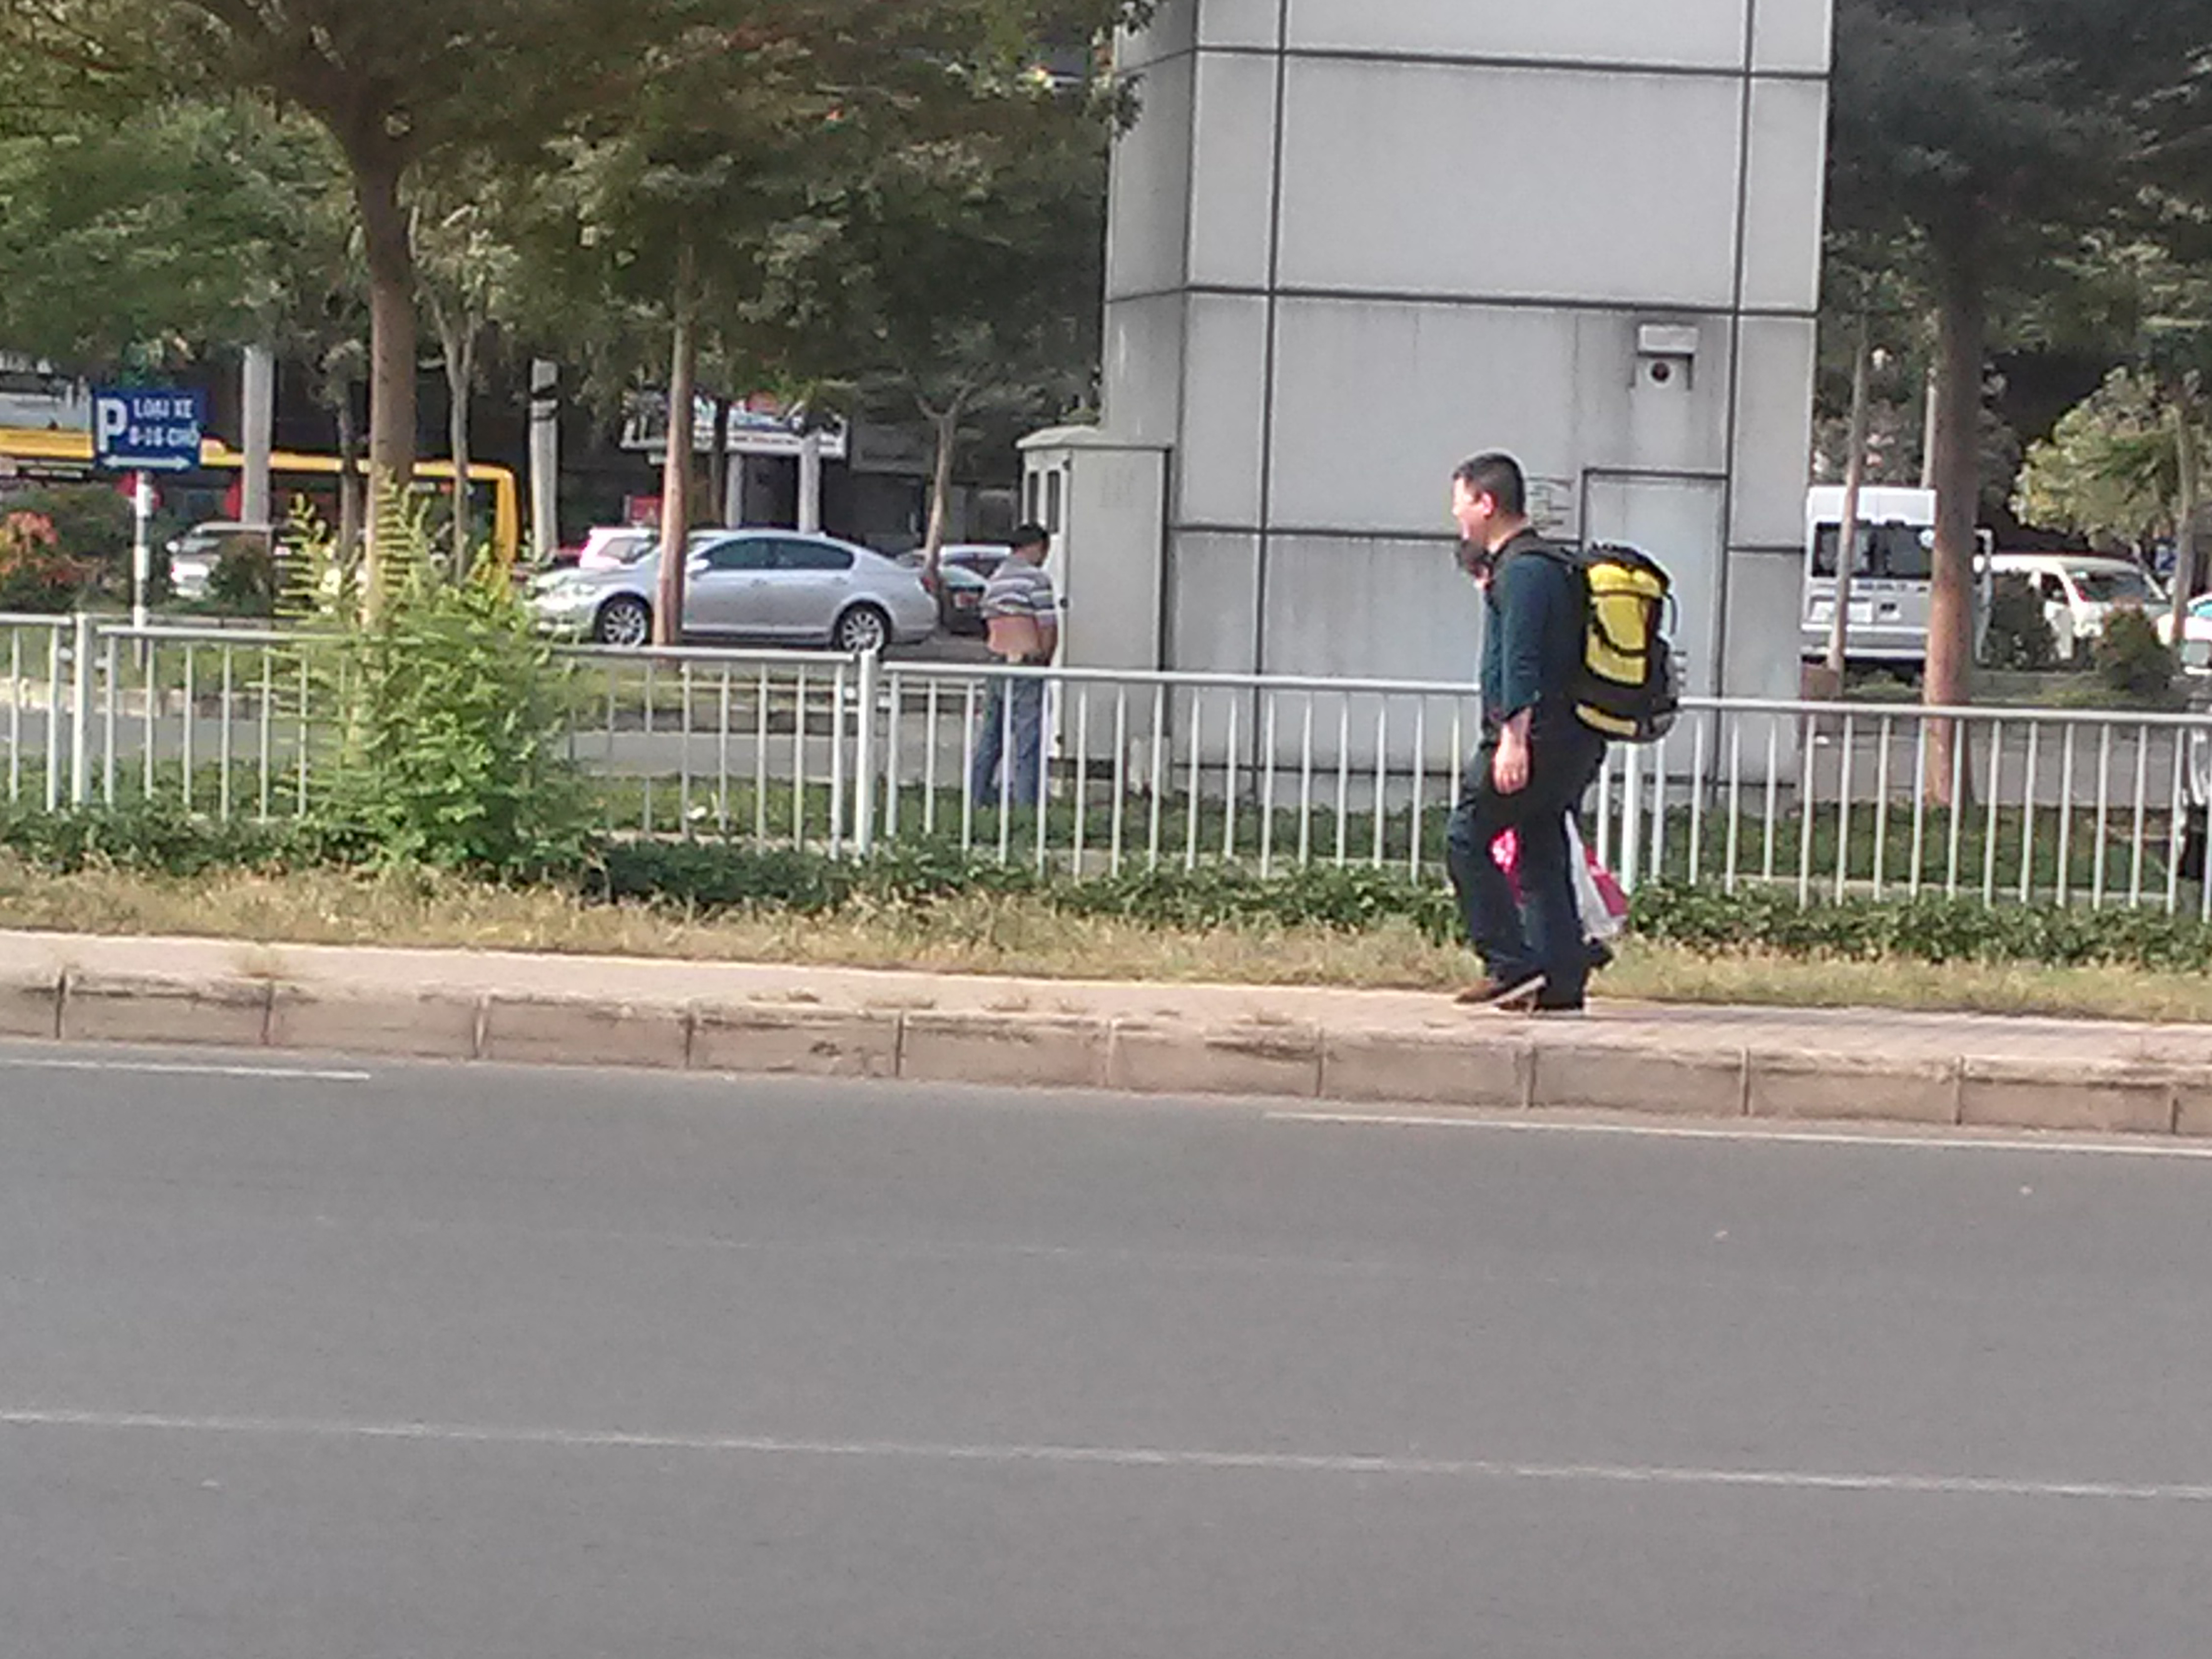 Một tài xế thản nhiên tiểu bậy ngay tại bãi xe trước mặt cặp du khách nước ngoài đang đi tới tại sân bay Tân Sơn Nhất.